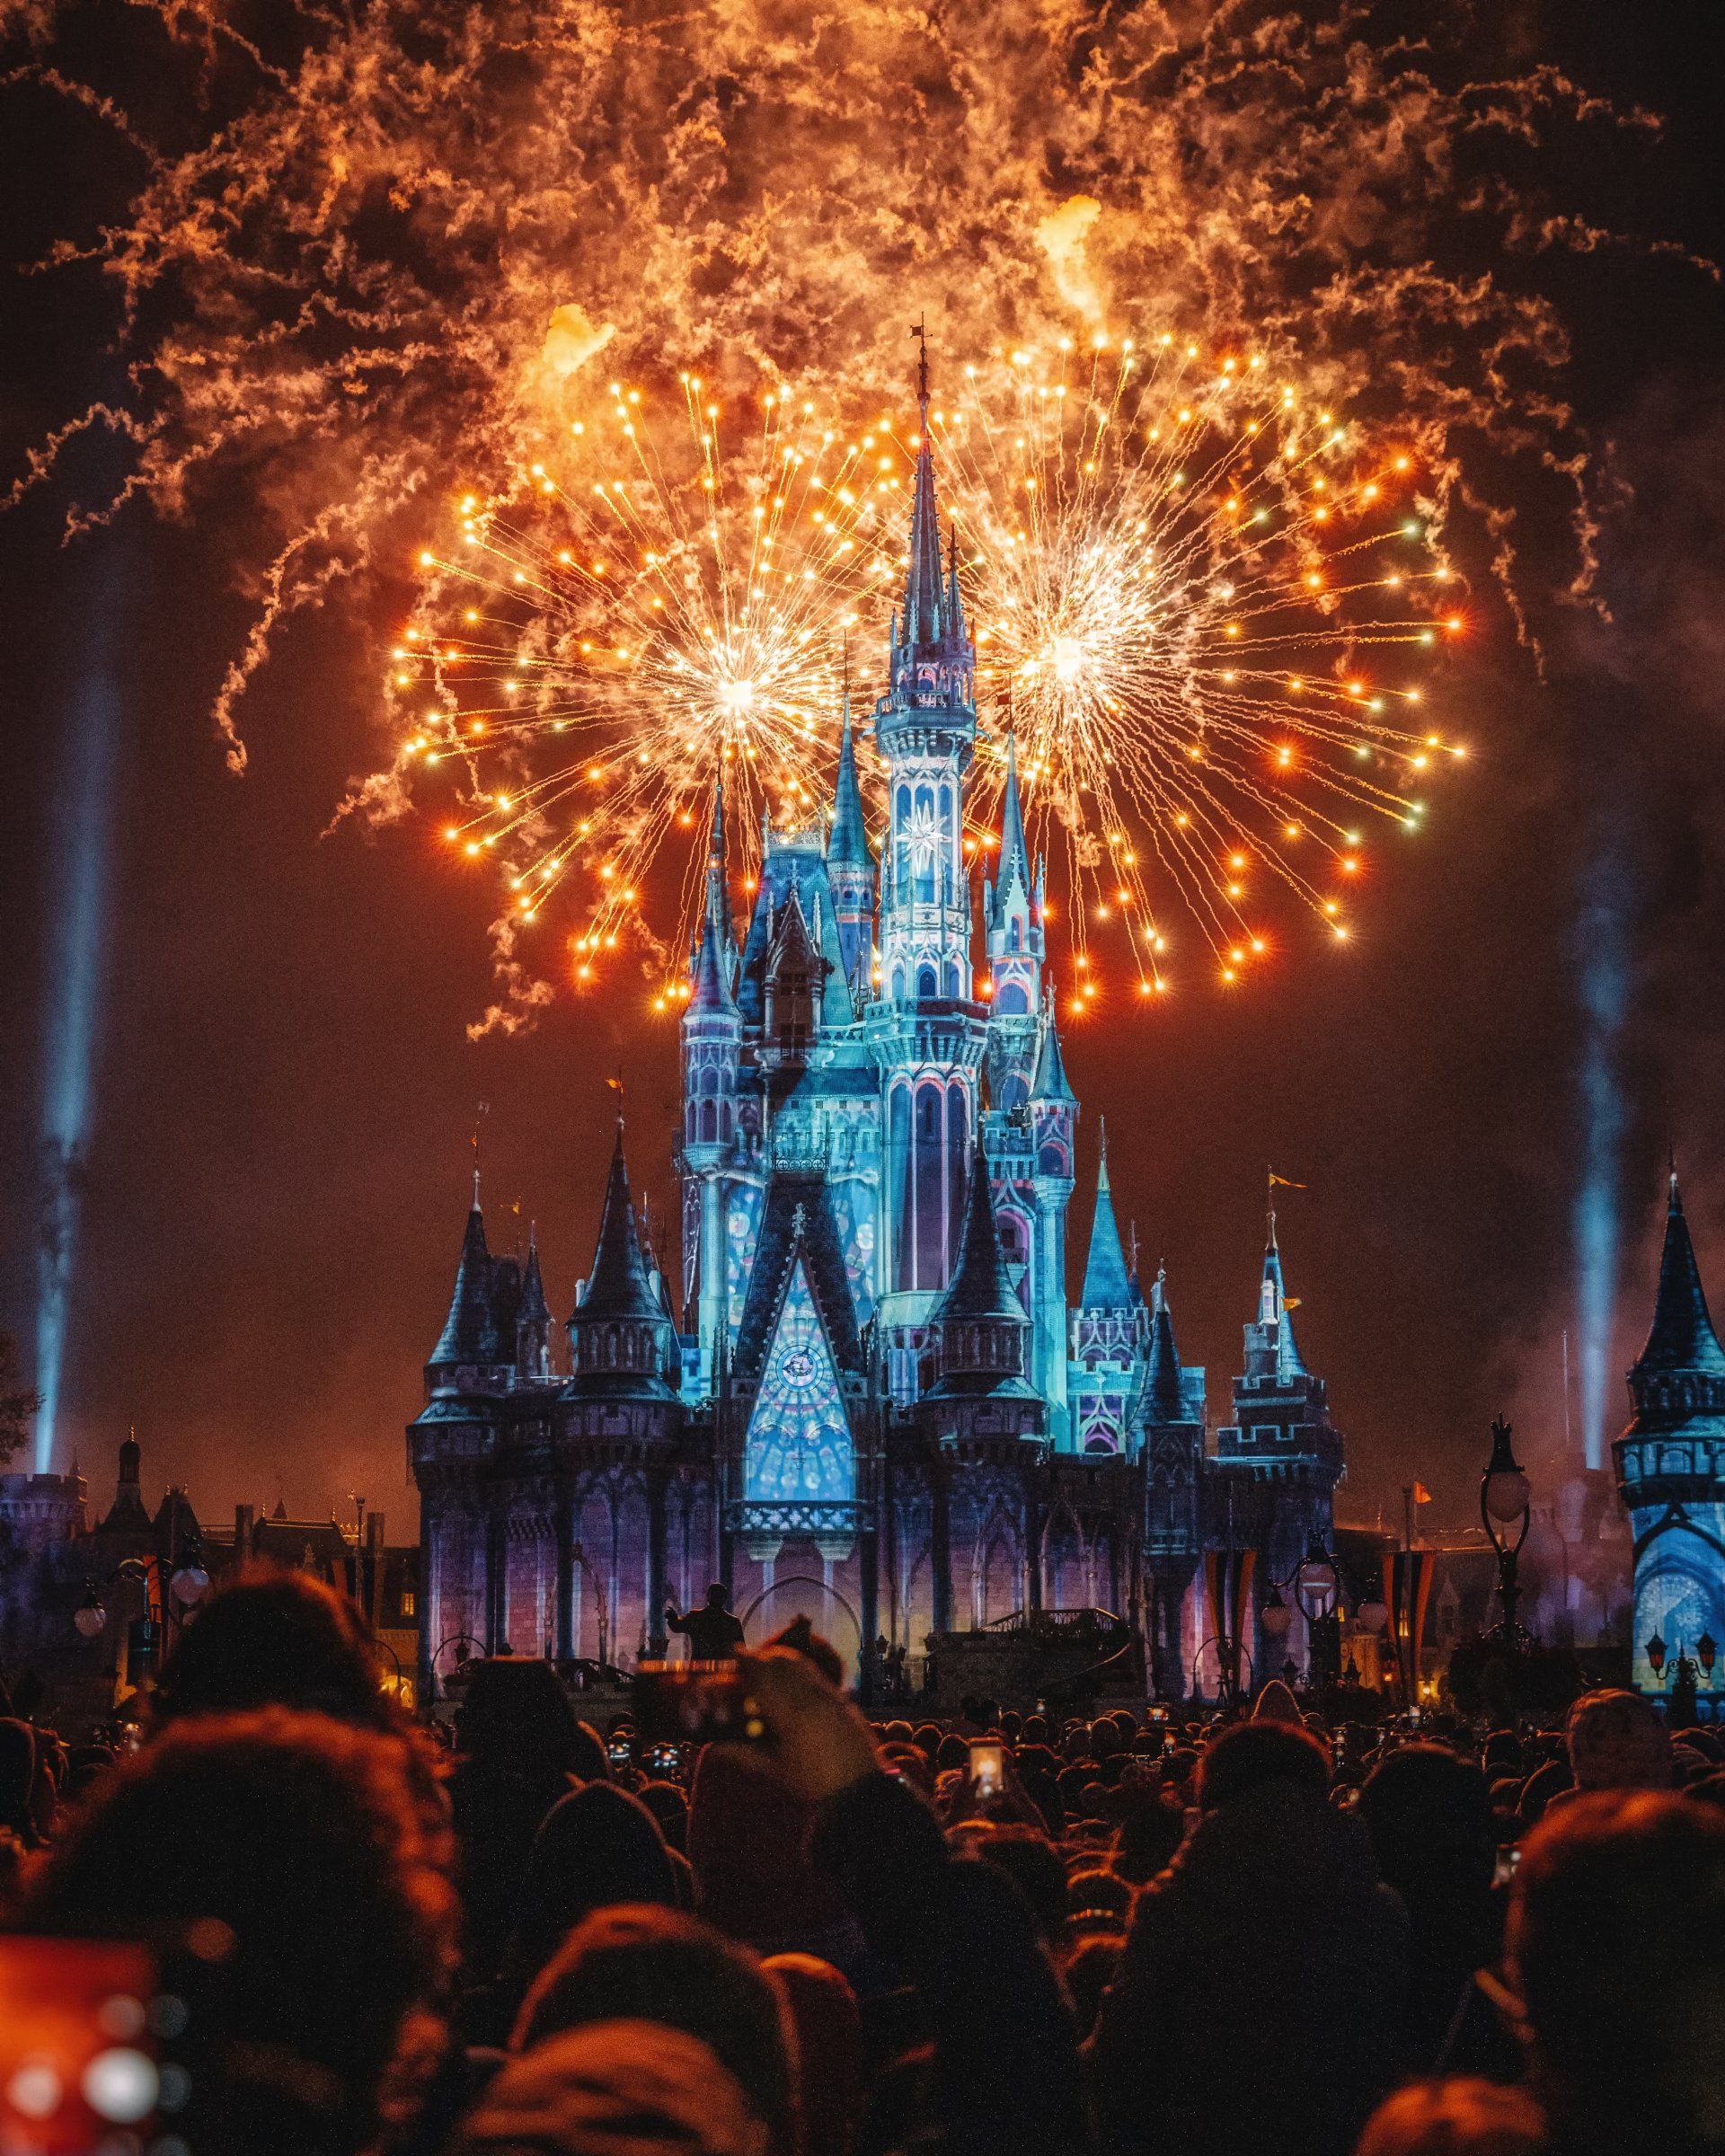 Een menigte mensen kijkt naar vuurwerk boven een kasteel.